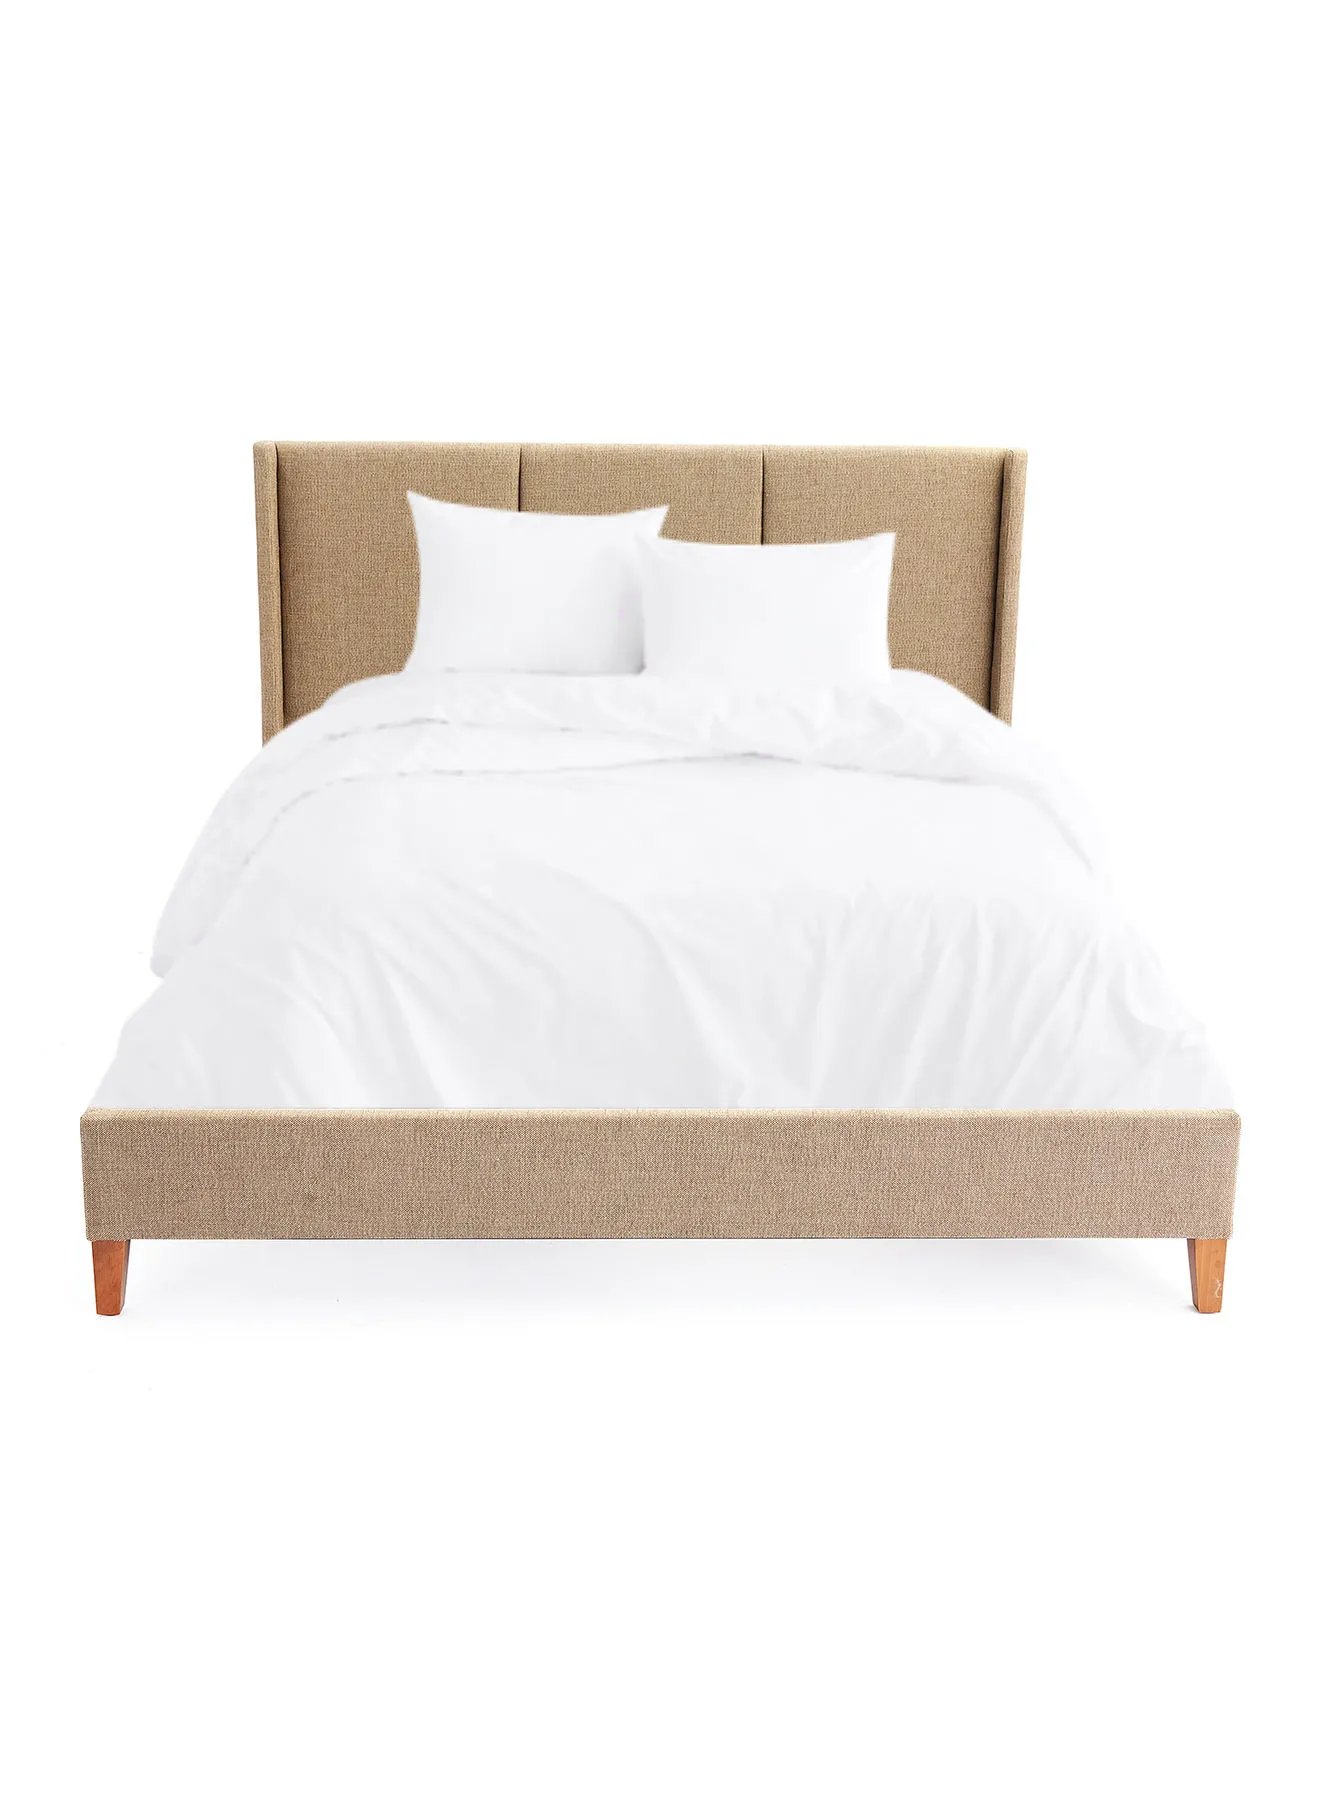 إطار سرير ebb & flow فاخر - سرير بحجم كوين - مجموعة مسمار أنيقة - لون بني - الحجم 1660 × 2080 × 1100 - منزل فاخر